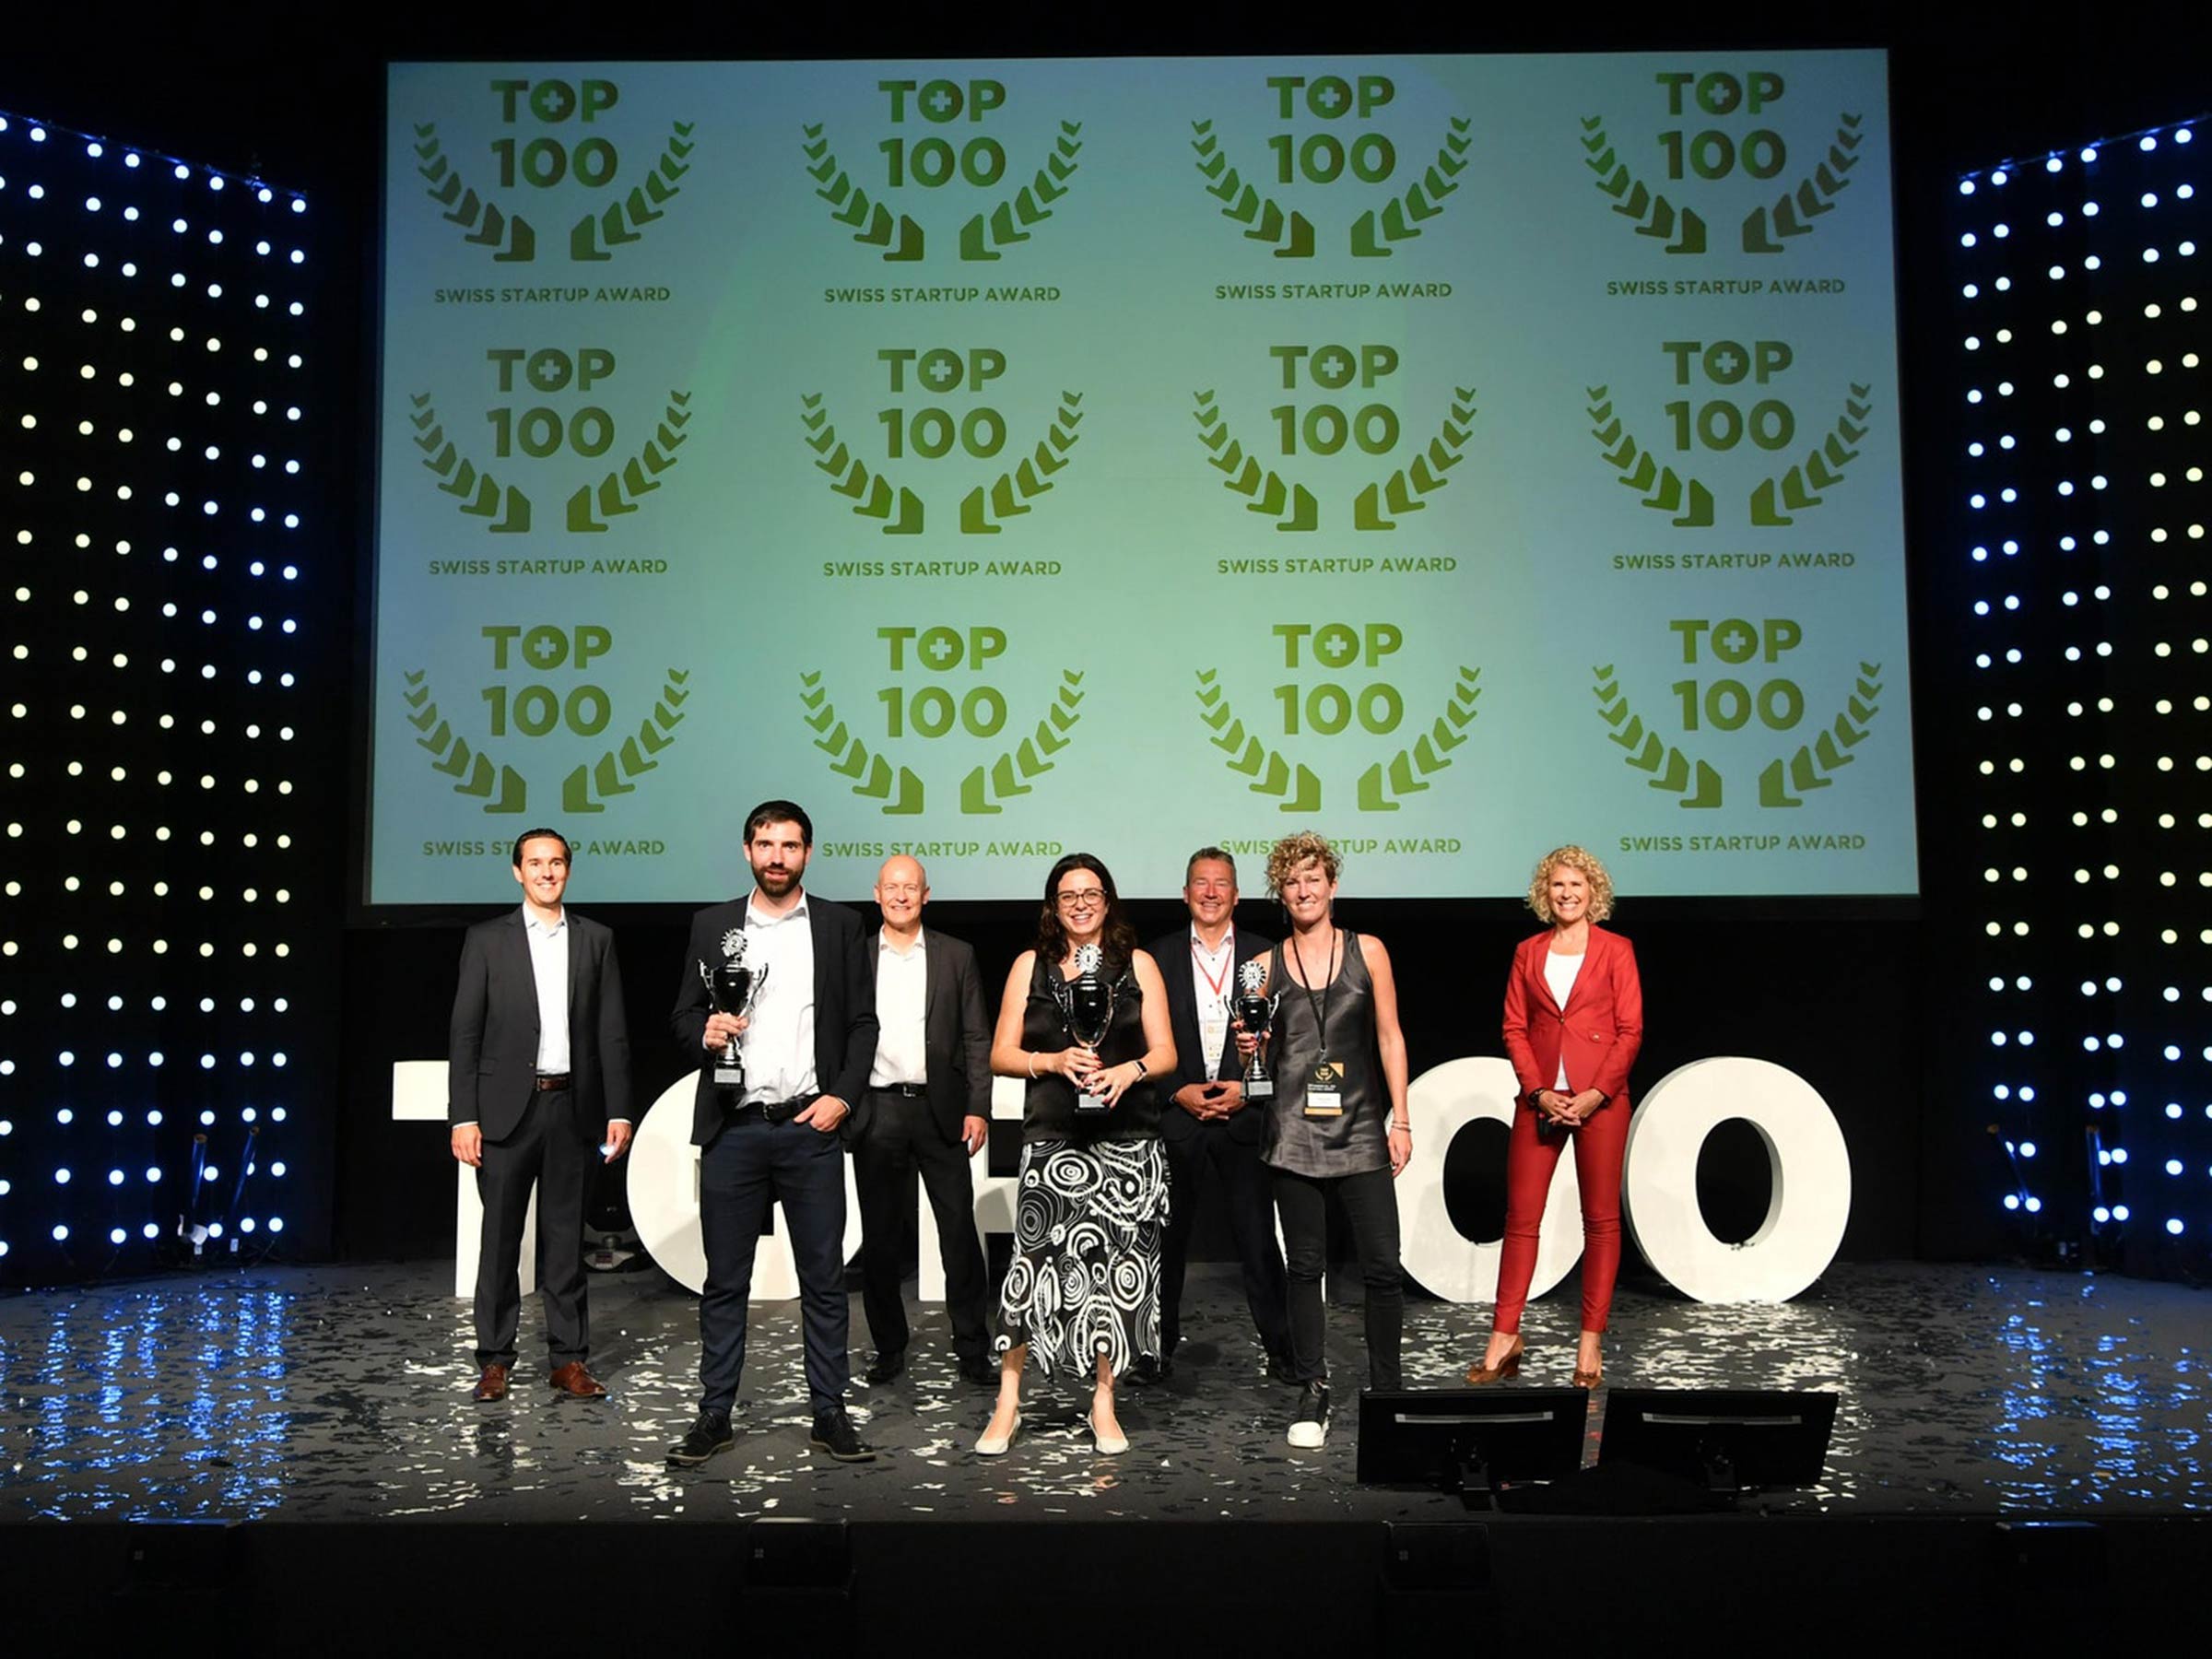 Die 100 besten Start-ups der Schweiz